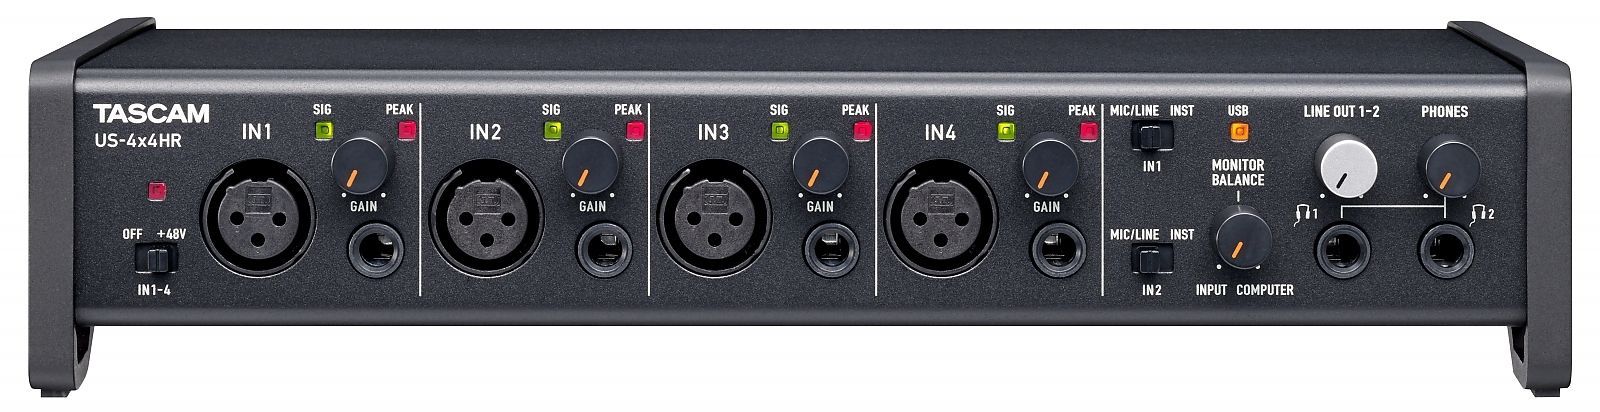 Tascam US-4x4HR USB Audio Interface 4-Kanal mit 4 Mikrofon-/Line-Eingängen